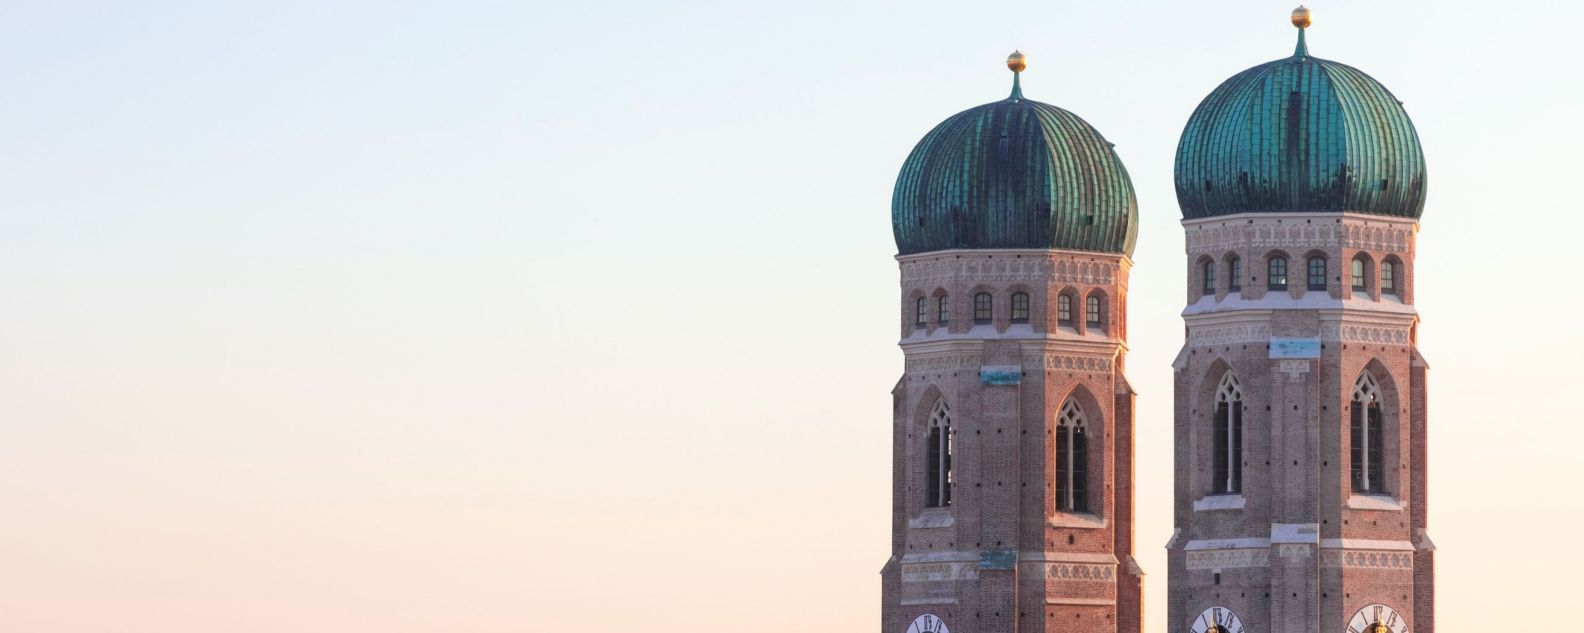 vista de las cúpulas gemelas de la iglesia Frauenkirche en Múnich, Alemania